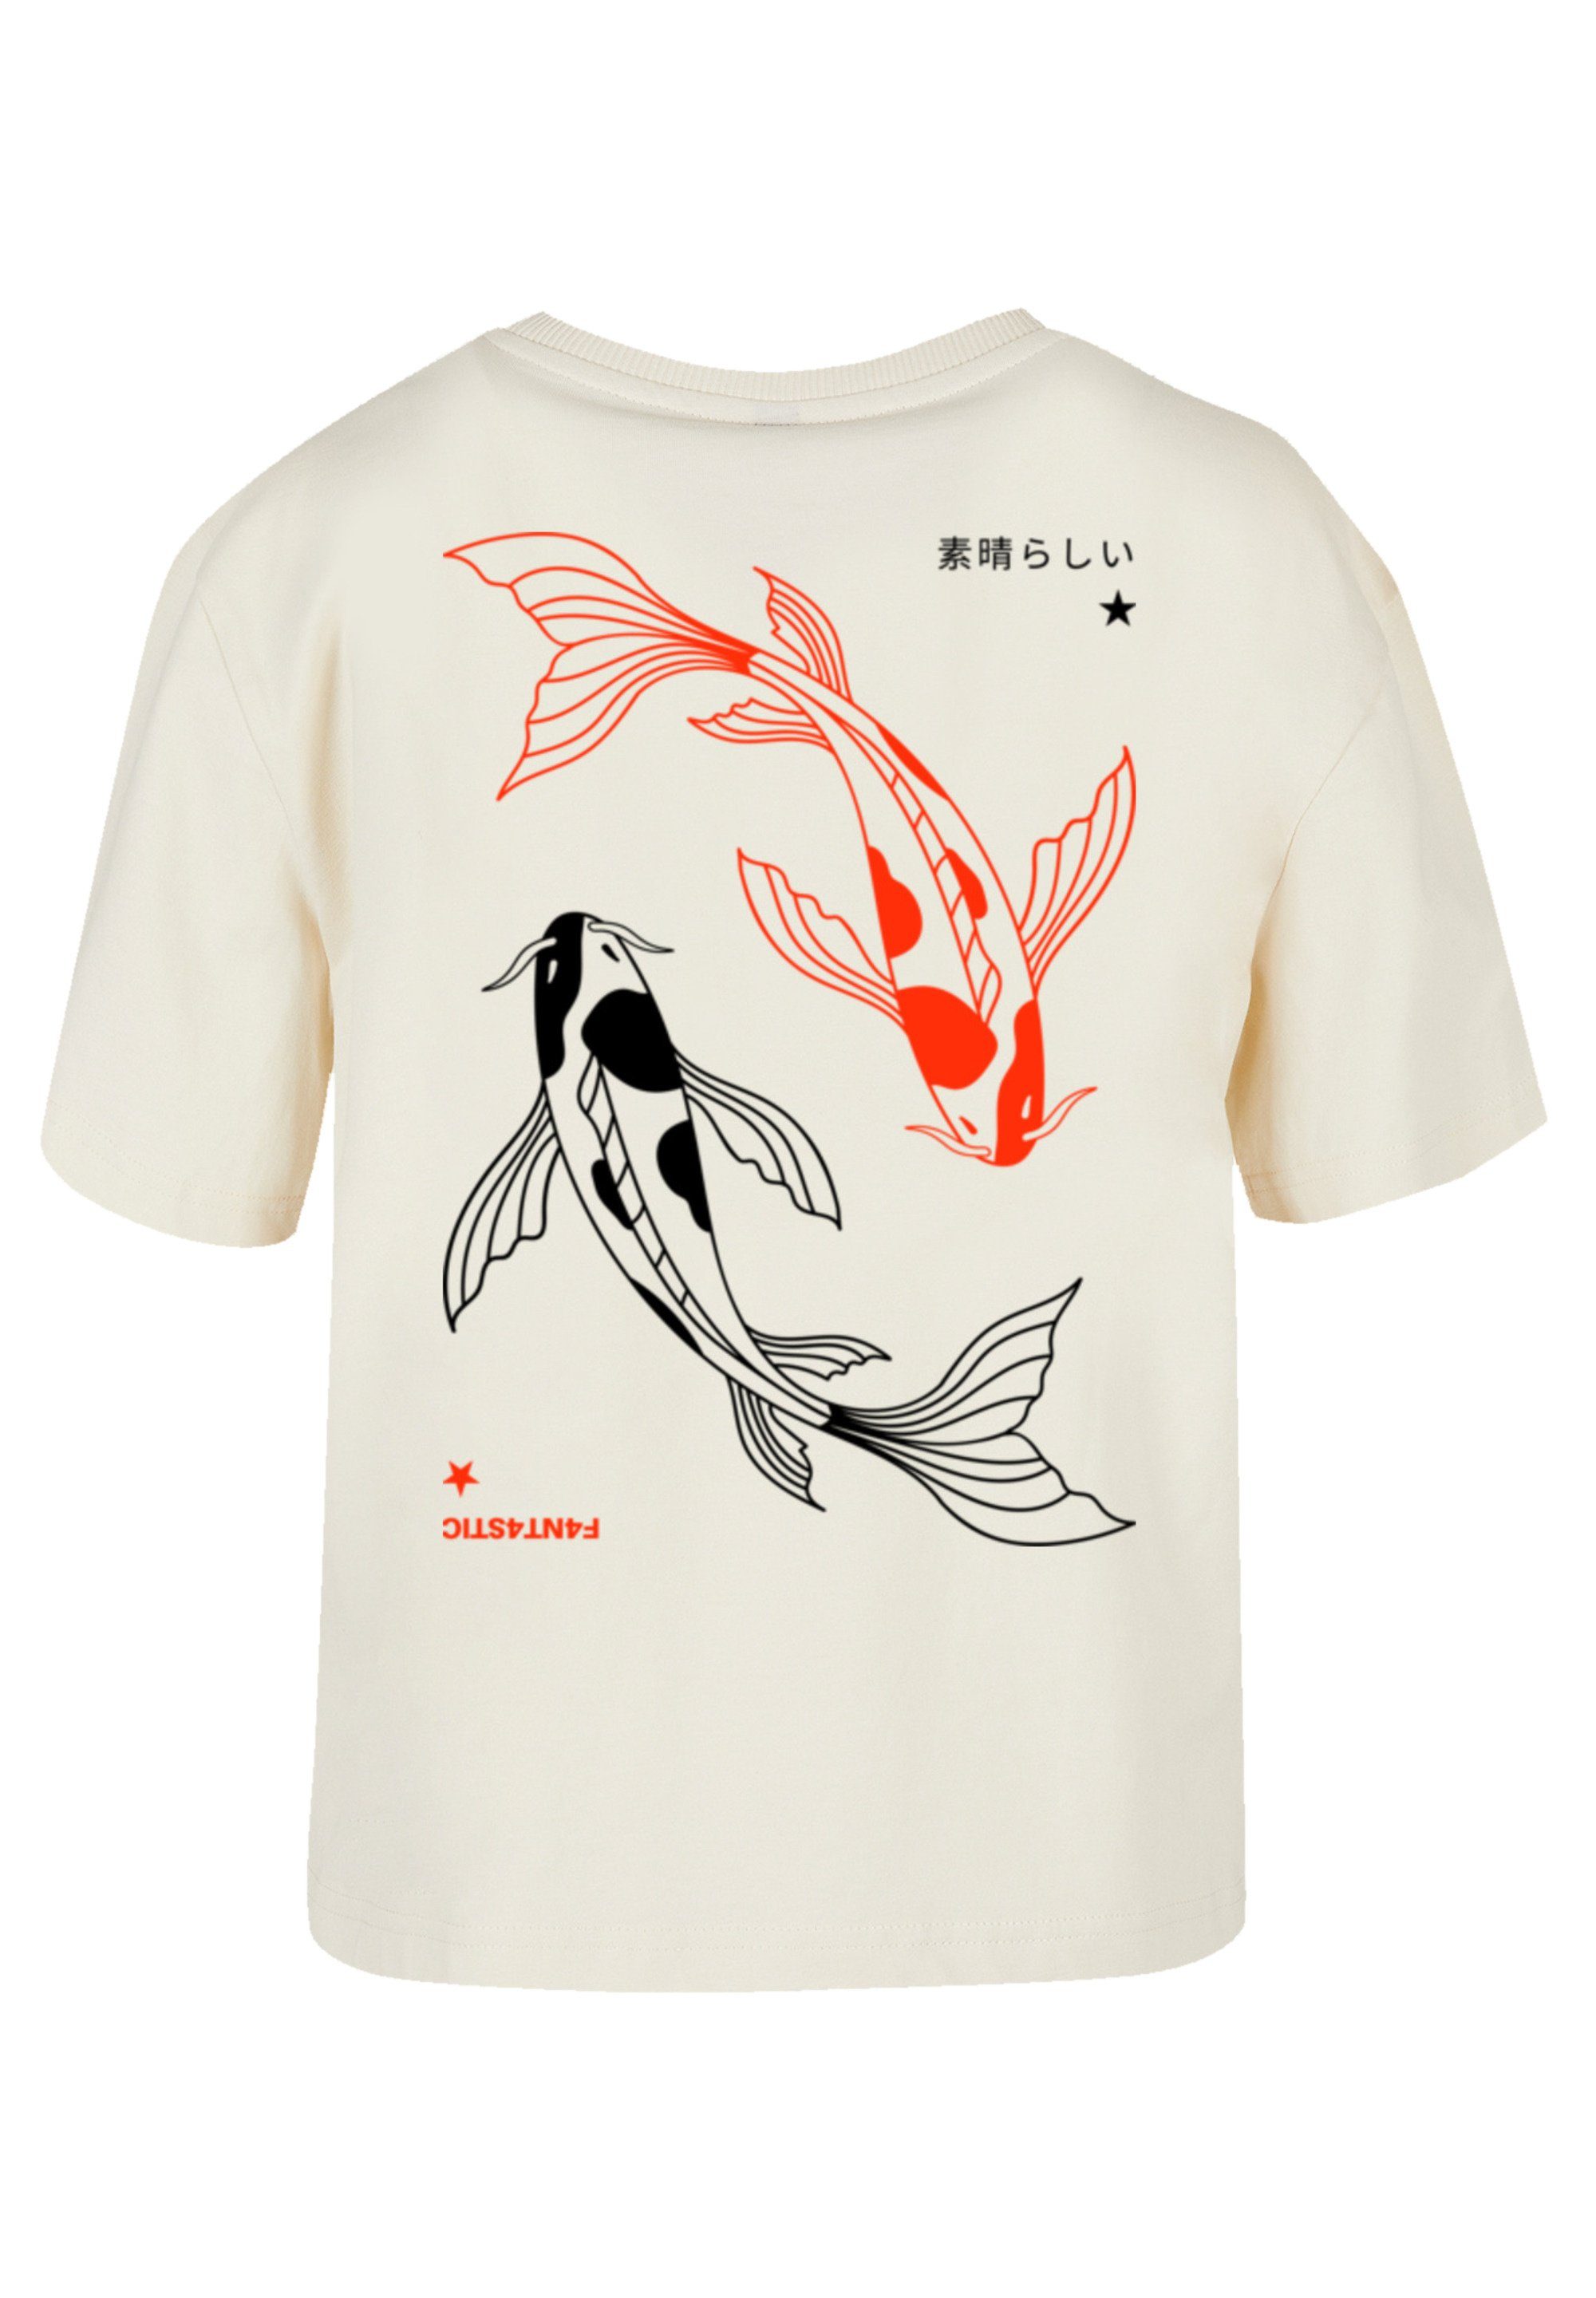 Koi Japan Karpfen Print, für Rundhalsausschnitt stylischen Look F4NT4STIC T-Shirt Gerippter